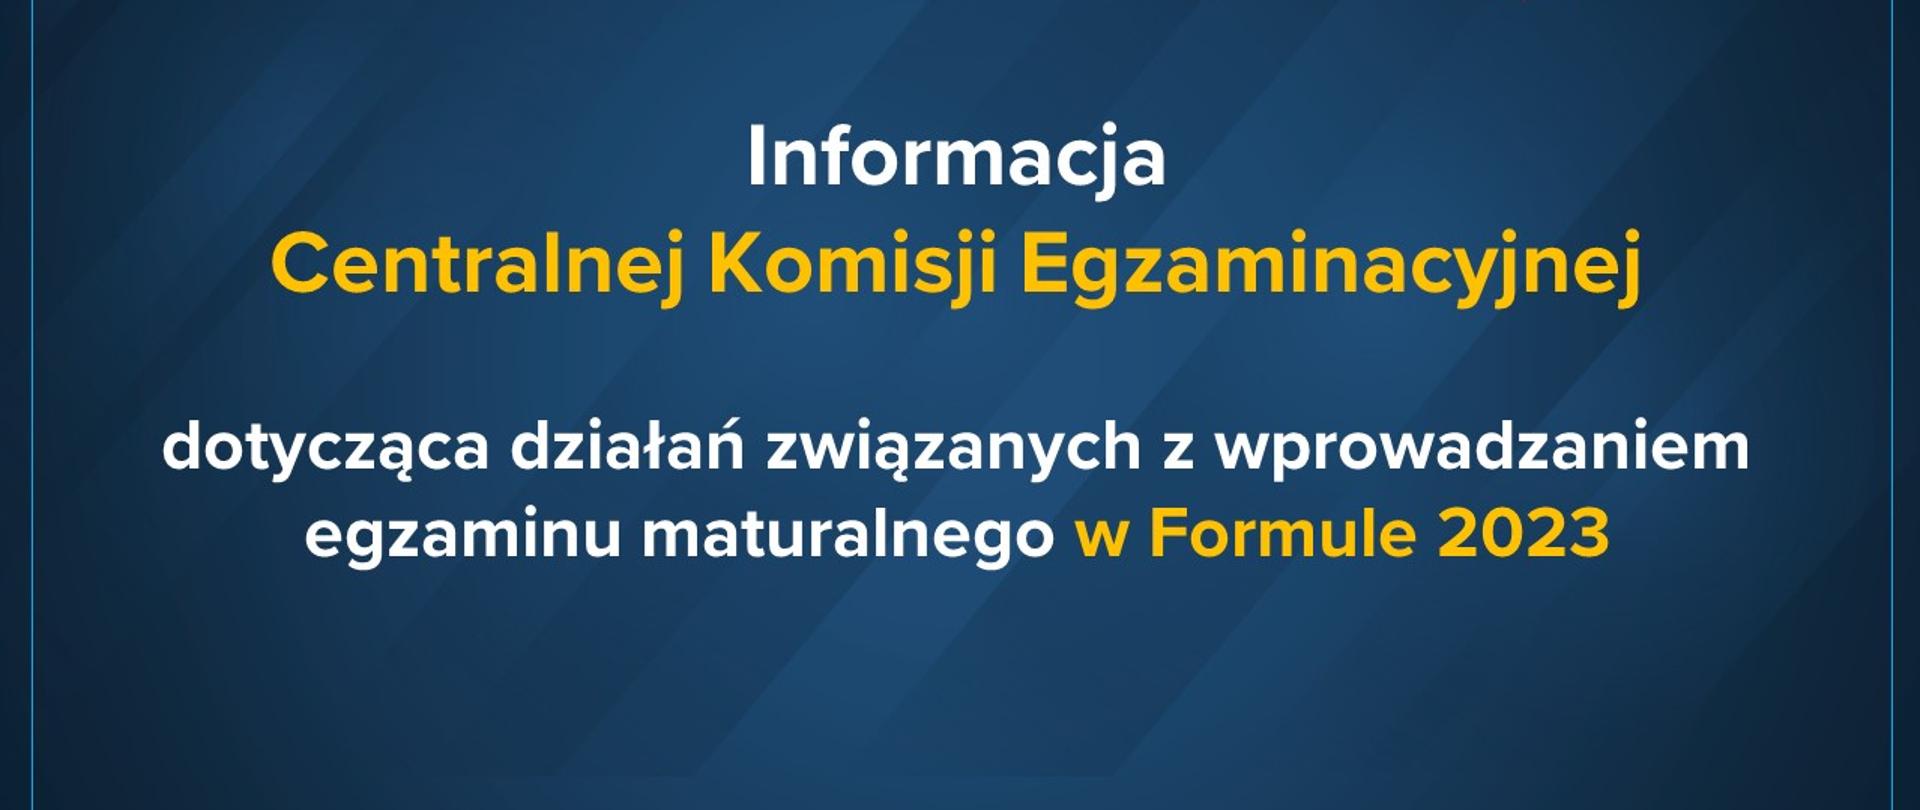 Informacja dyrektora Centralnej Komisji Egzaminacyjnej dotycząca działań związanych z wprowadzaniem egzaminu maturalnego w Formule 2023.